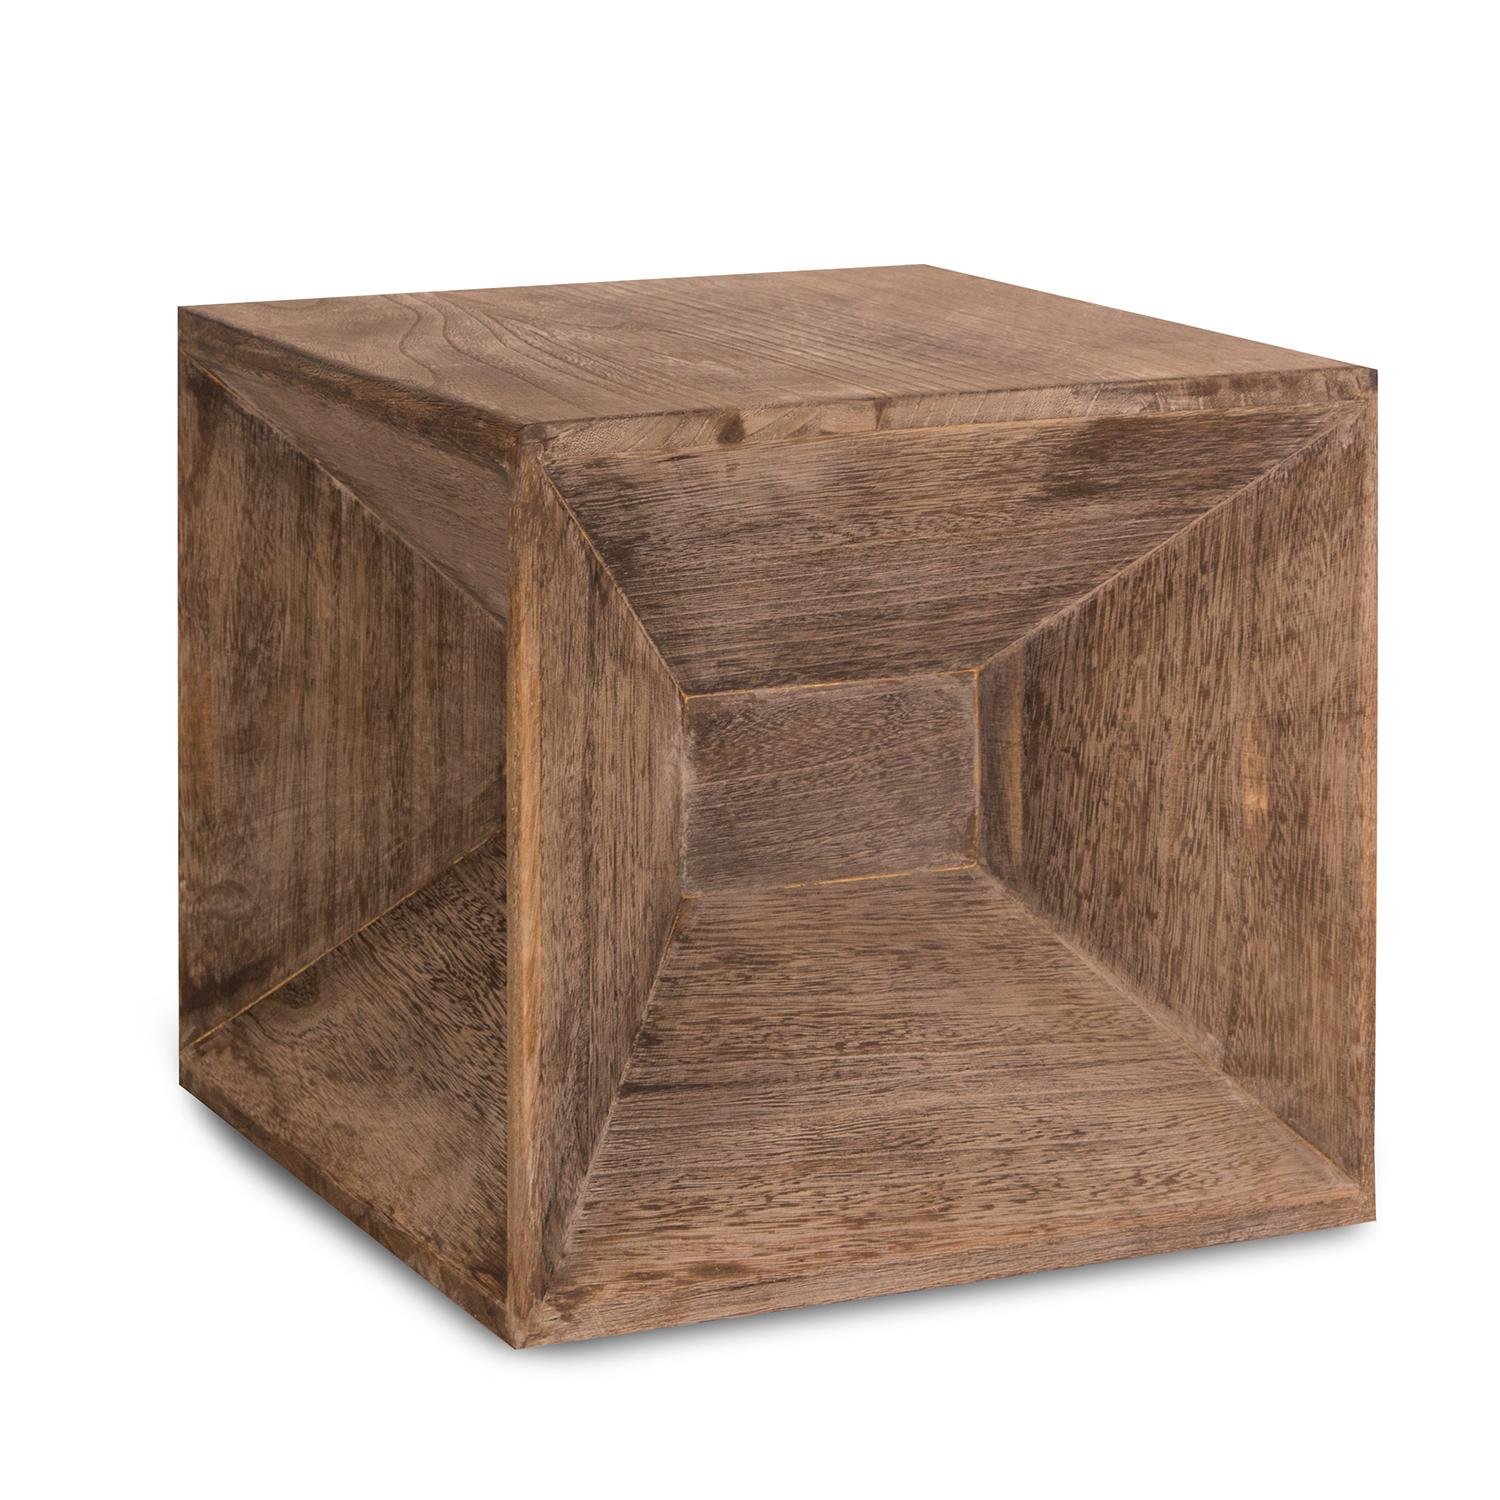 Hocker Beistelltisch Holz Sitzwürfel Sitzhocker Würfel Cube Nachttisch Braun Grau Vintage